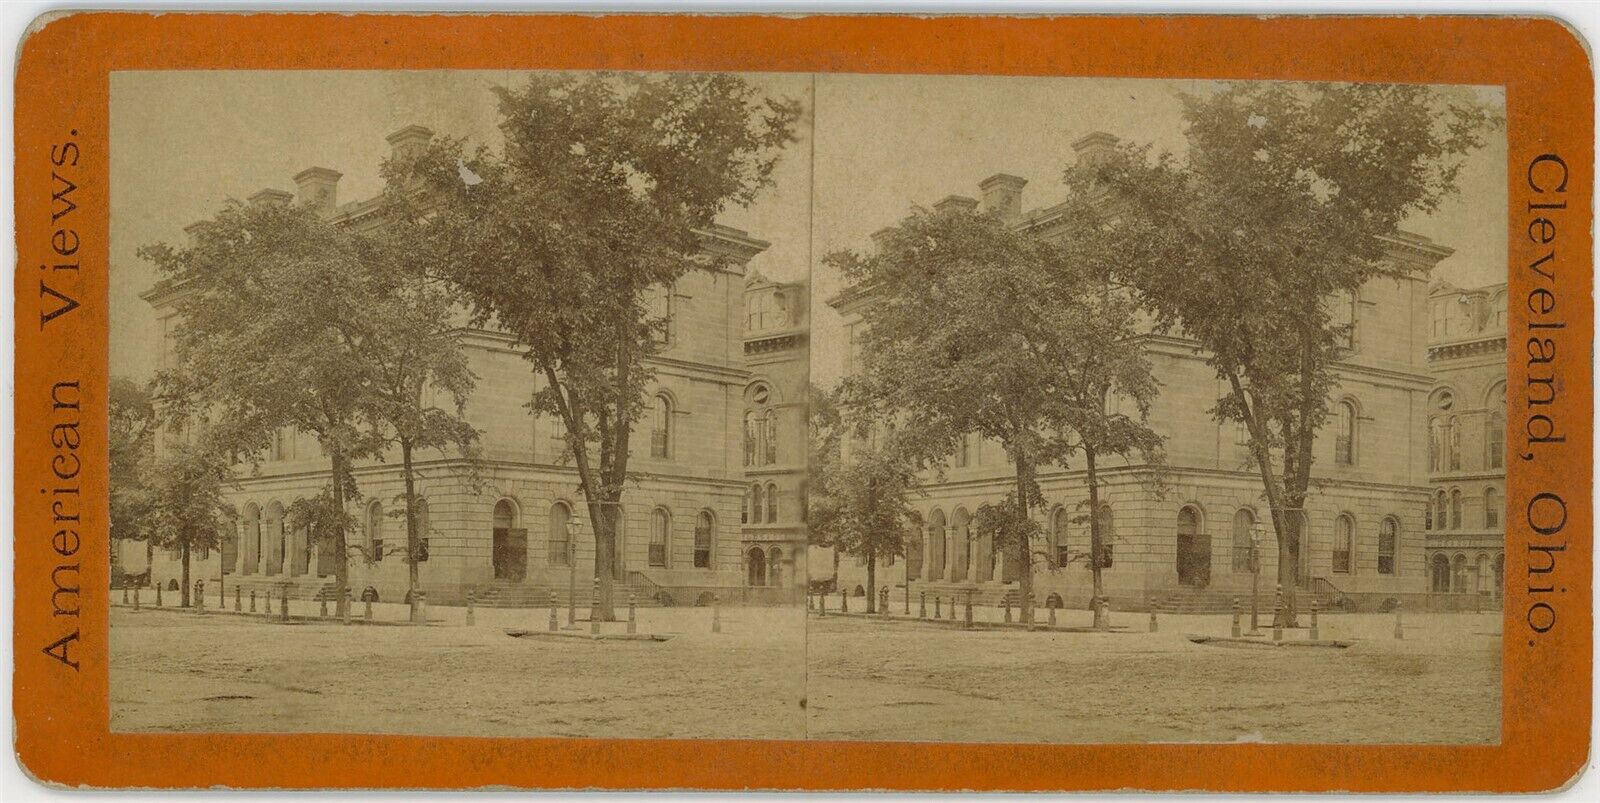 OHIO SV - Cleveland - Post Office - Anthony 1870s